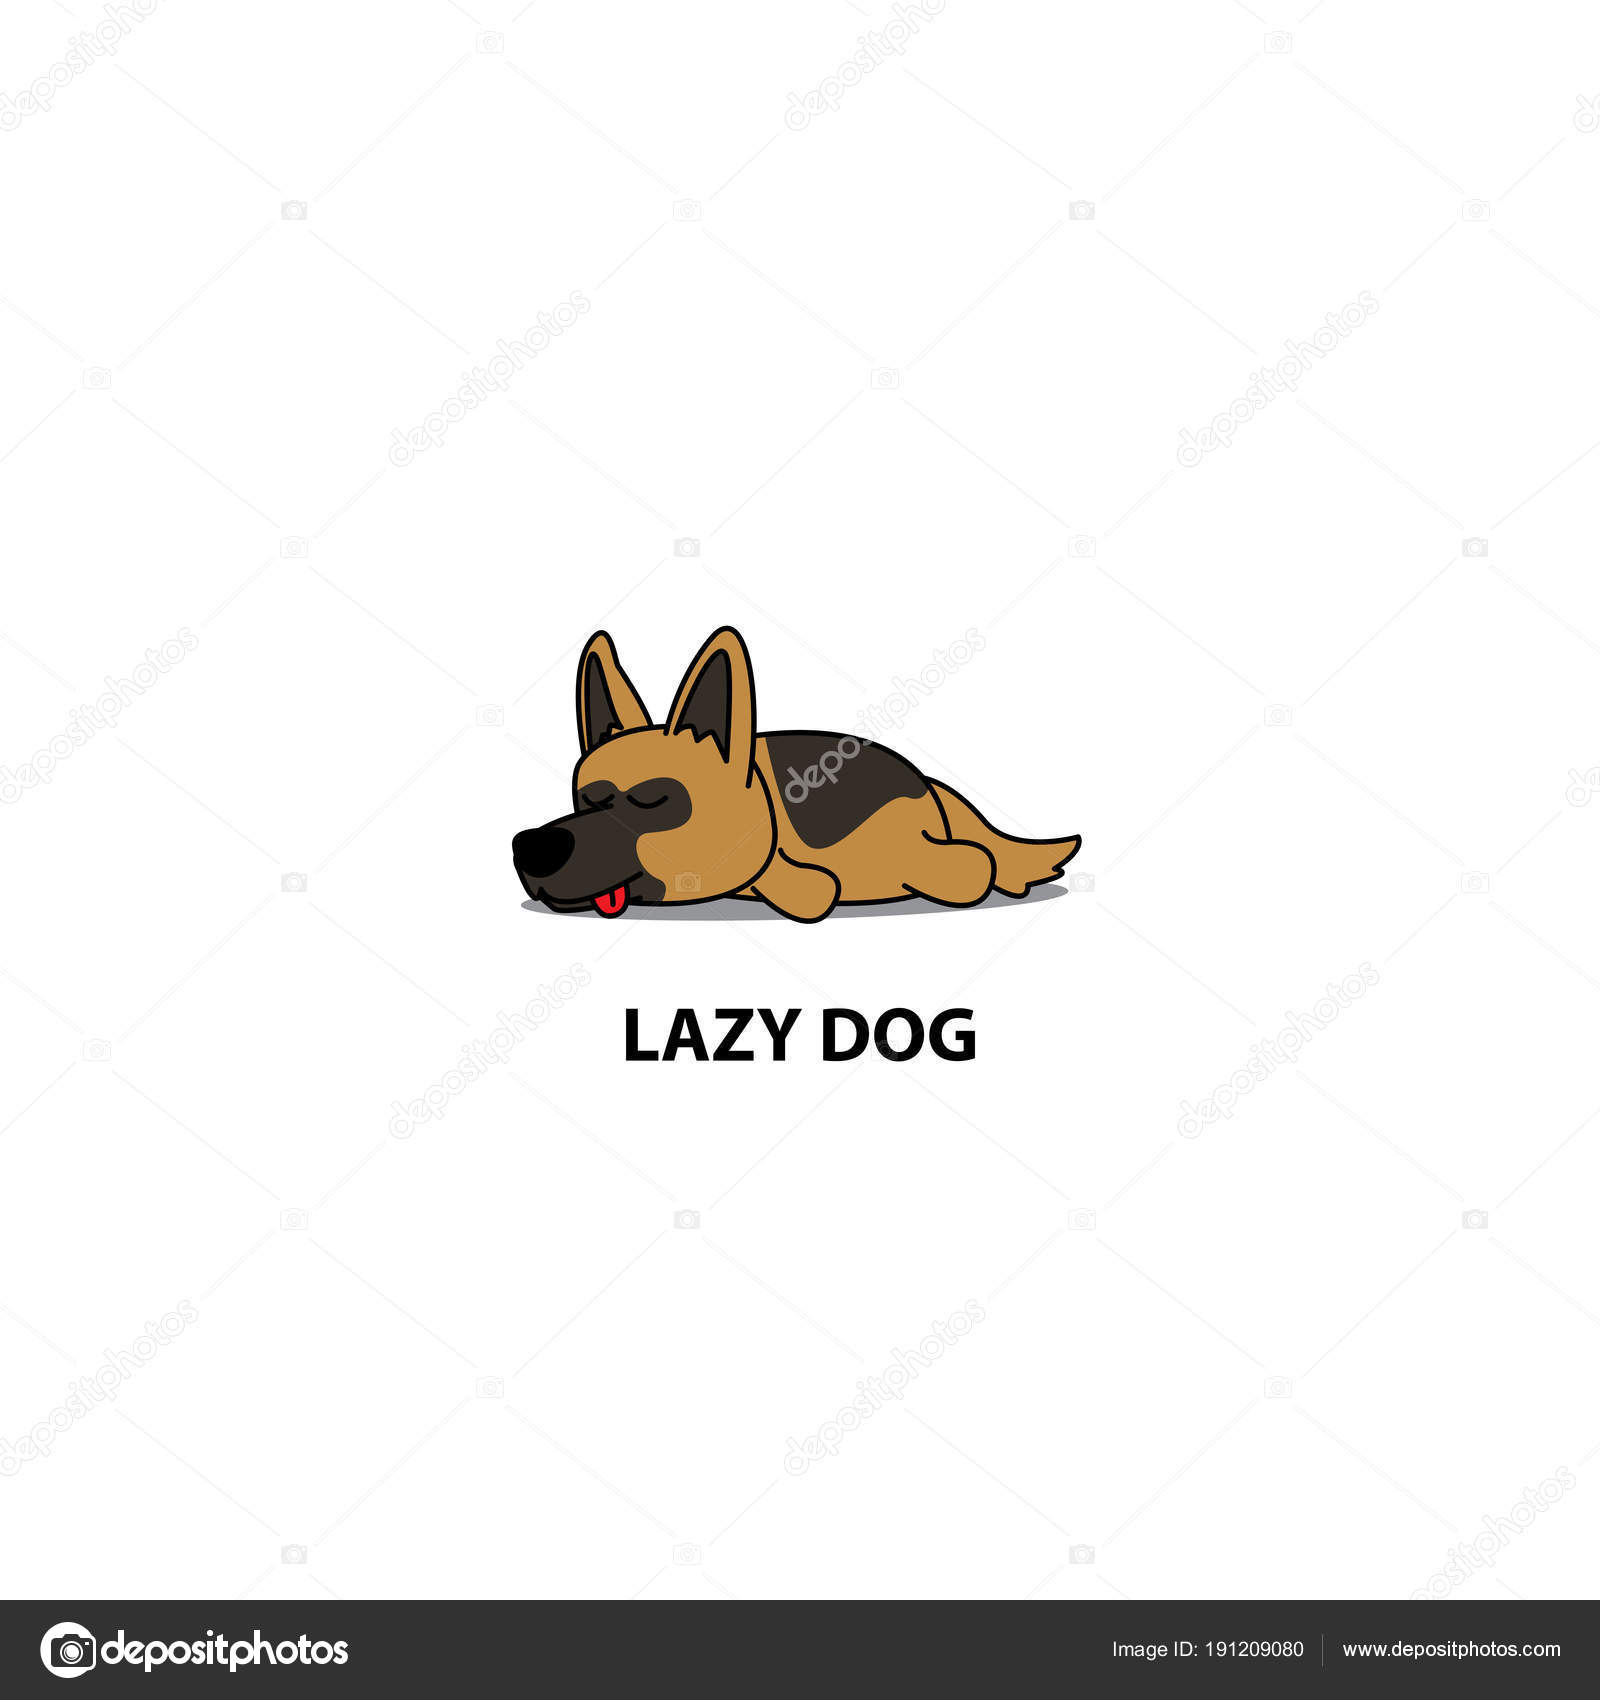 lazy dog cartoon